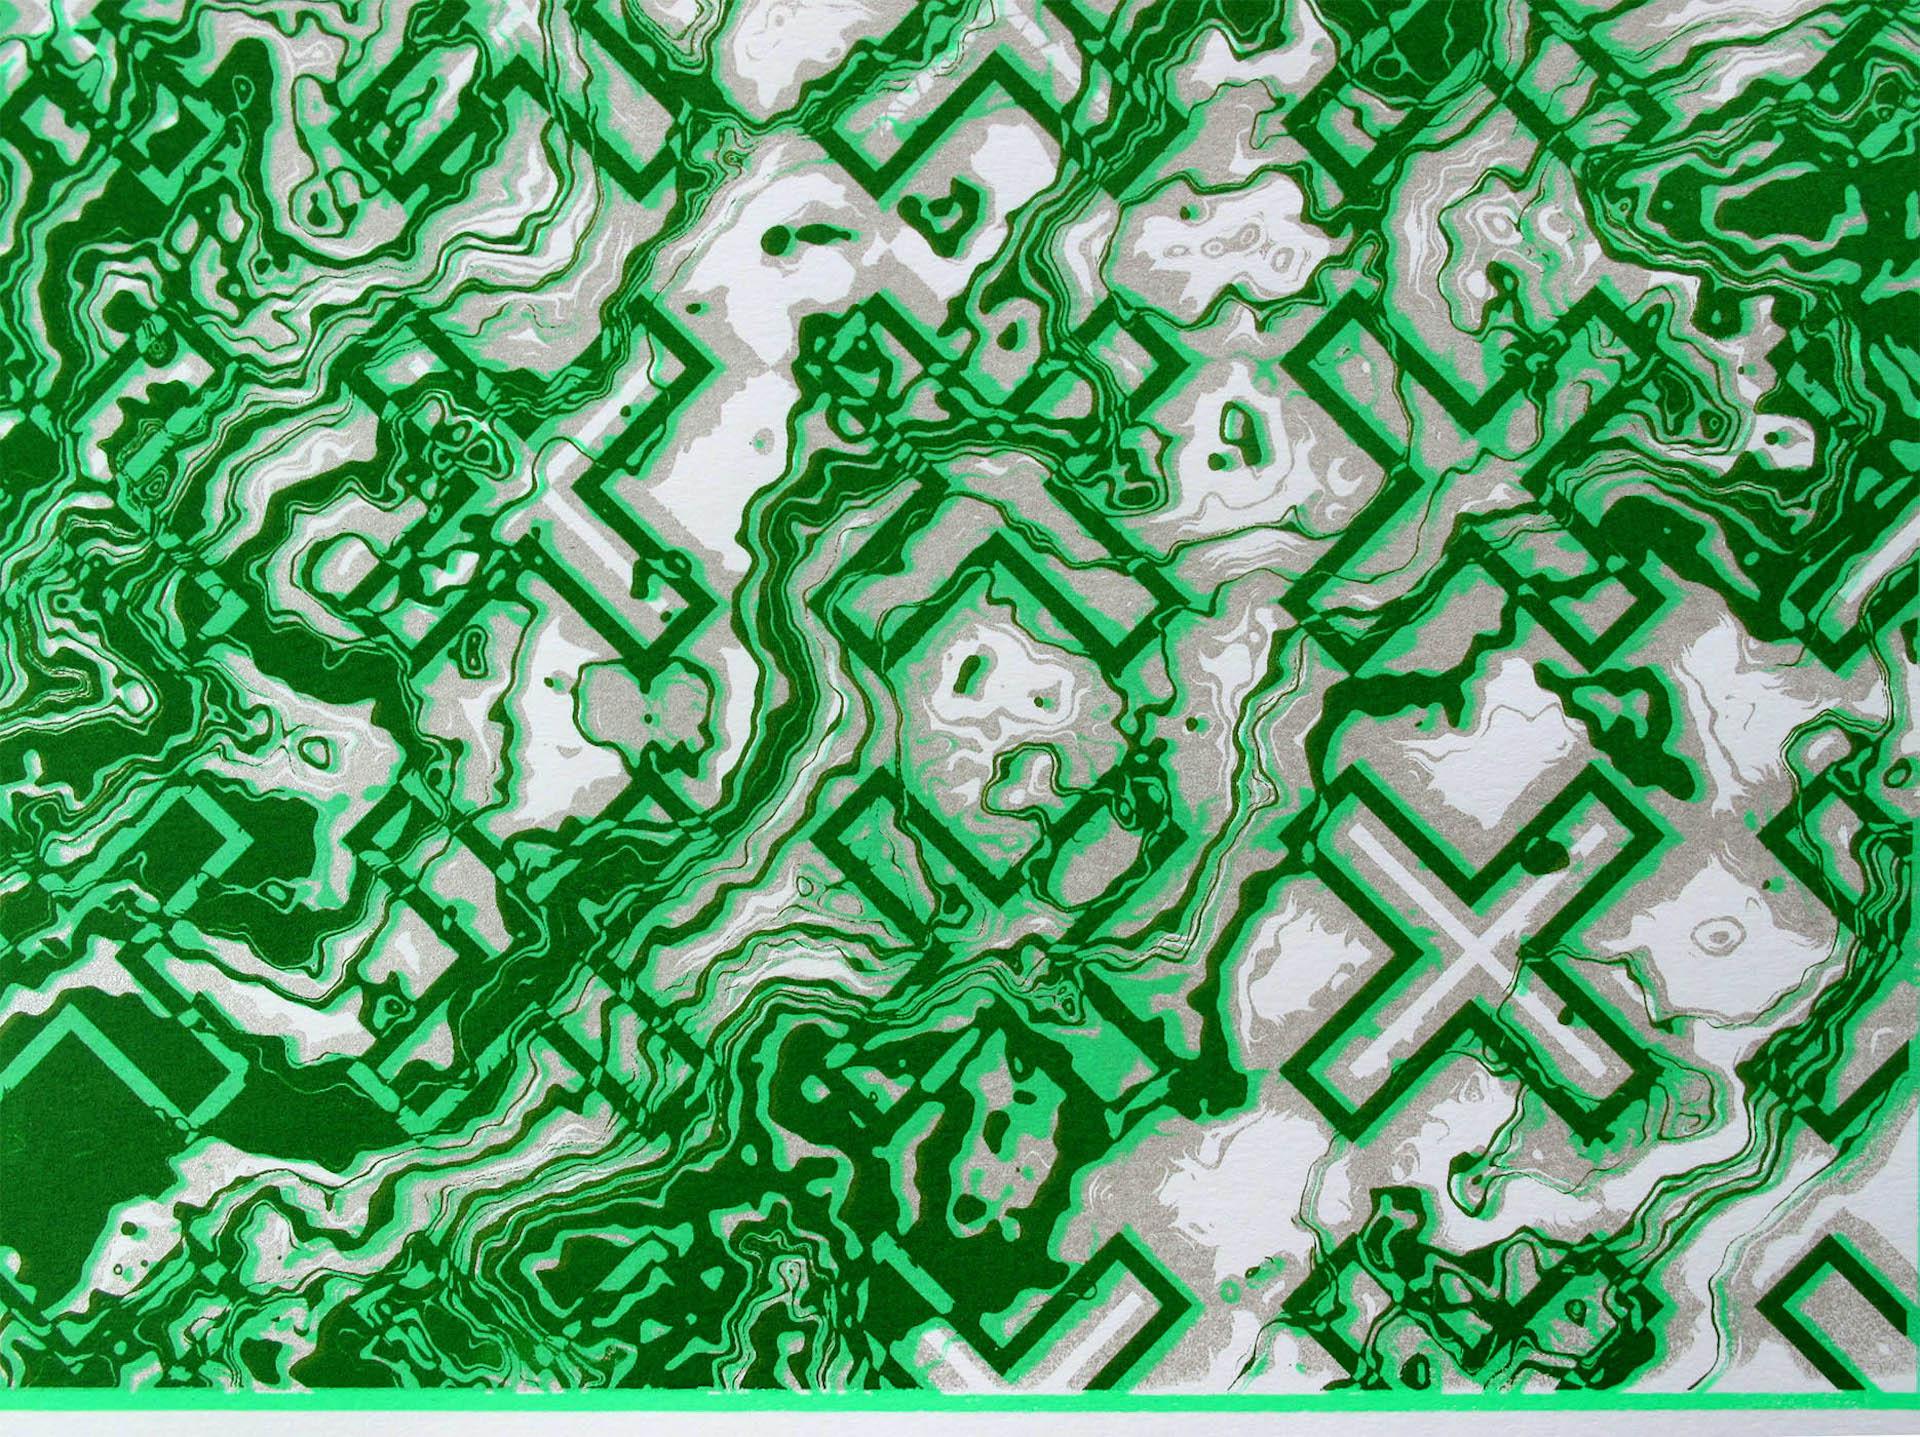 Chris Keegan, Green Flow, Limited Edition Silkscreen Print, Abstract Art 3